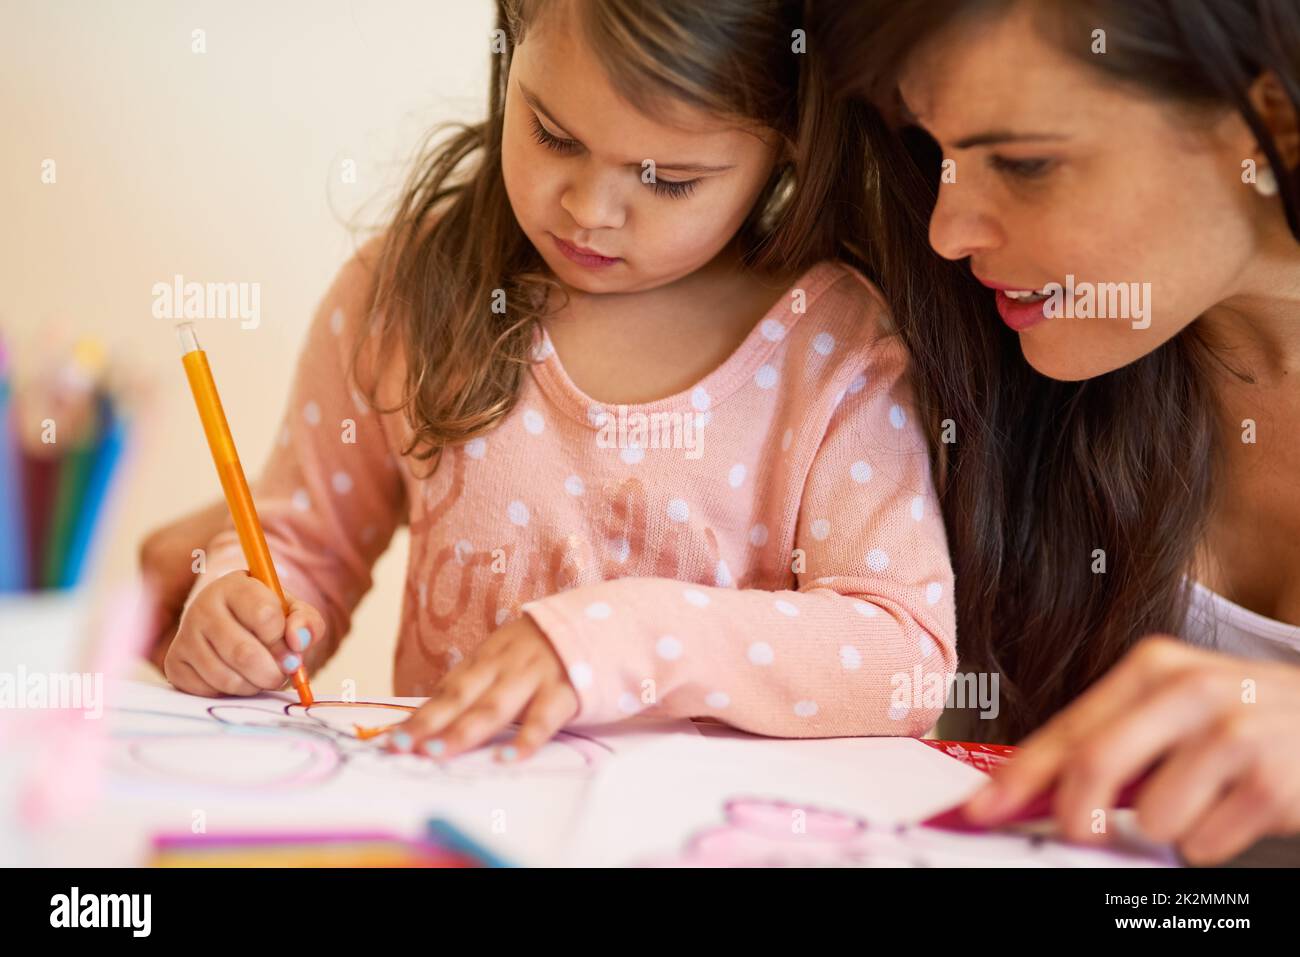 Elle a une imagination si brillante. Photo rognée d'une mère et d'une fille colorant dans une photo ensemble à la maison. Banque D'Images